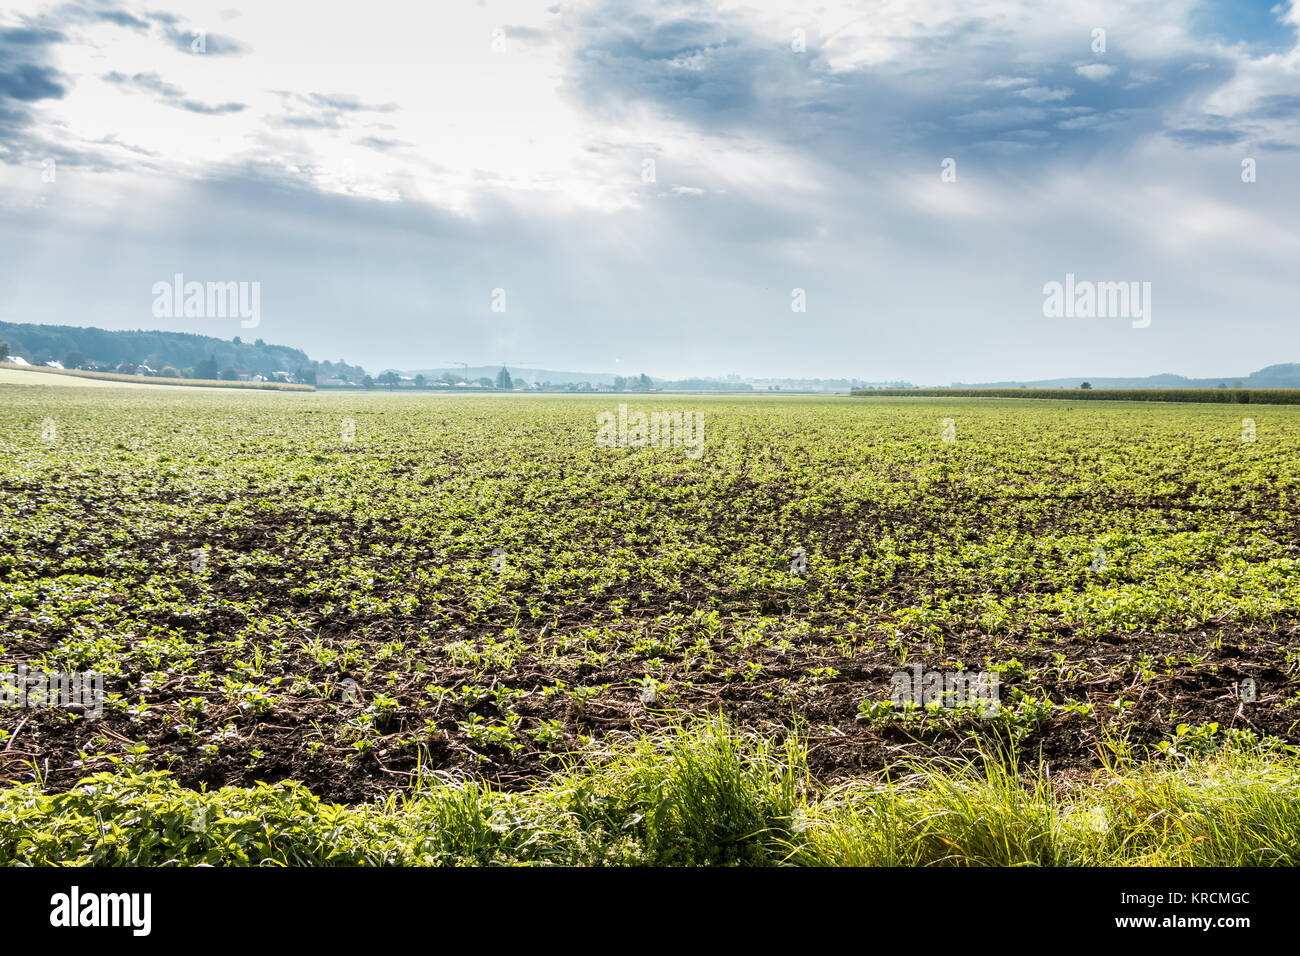 Große grüne Felder von Korn und bewölkter Himmel Stockfoto